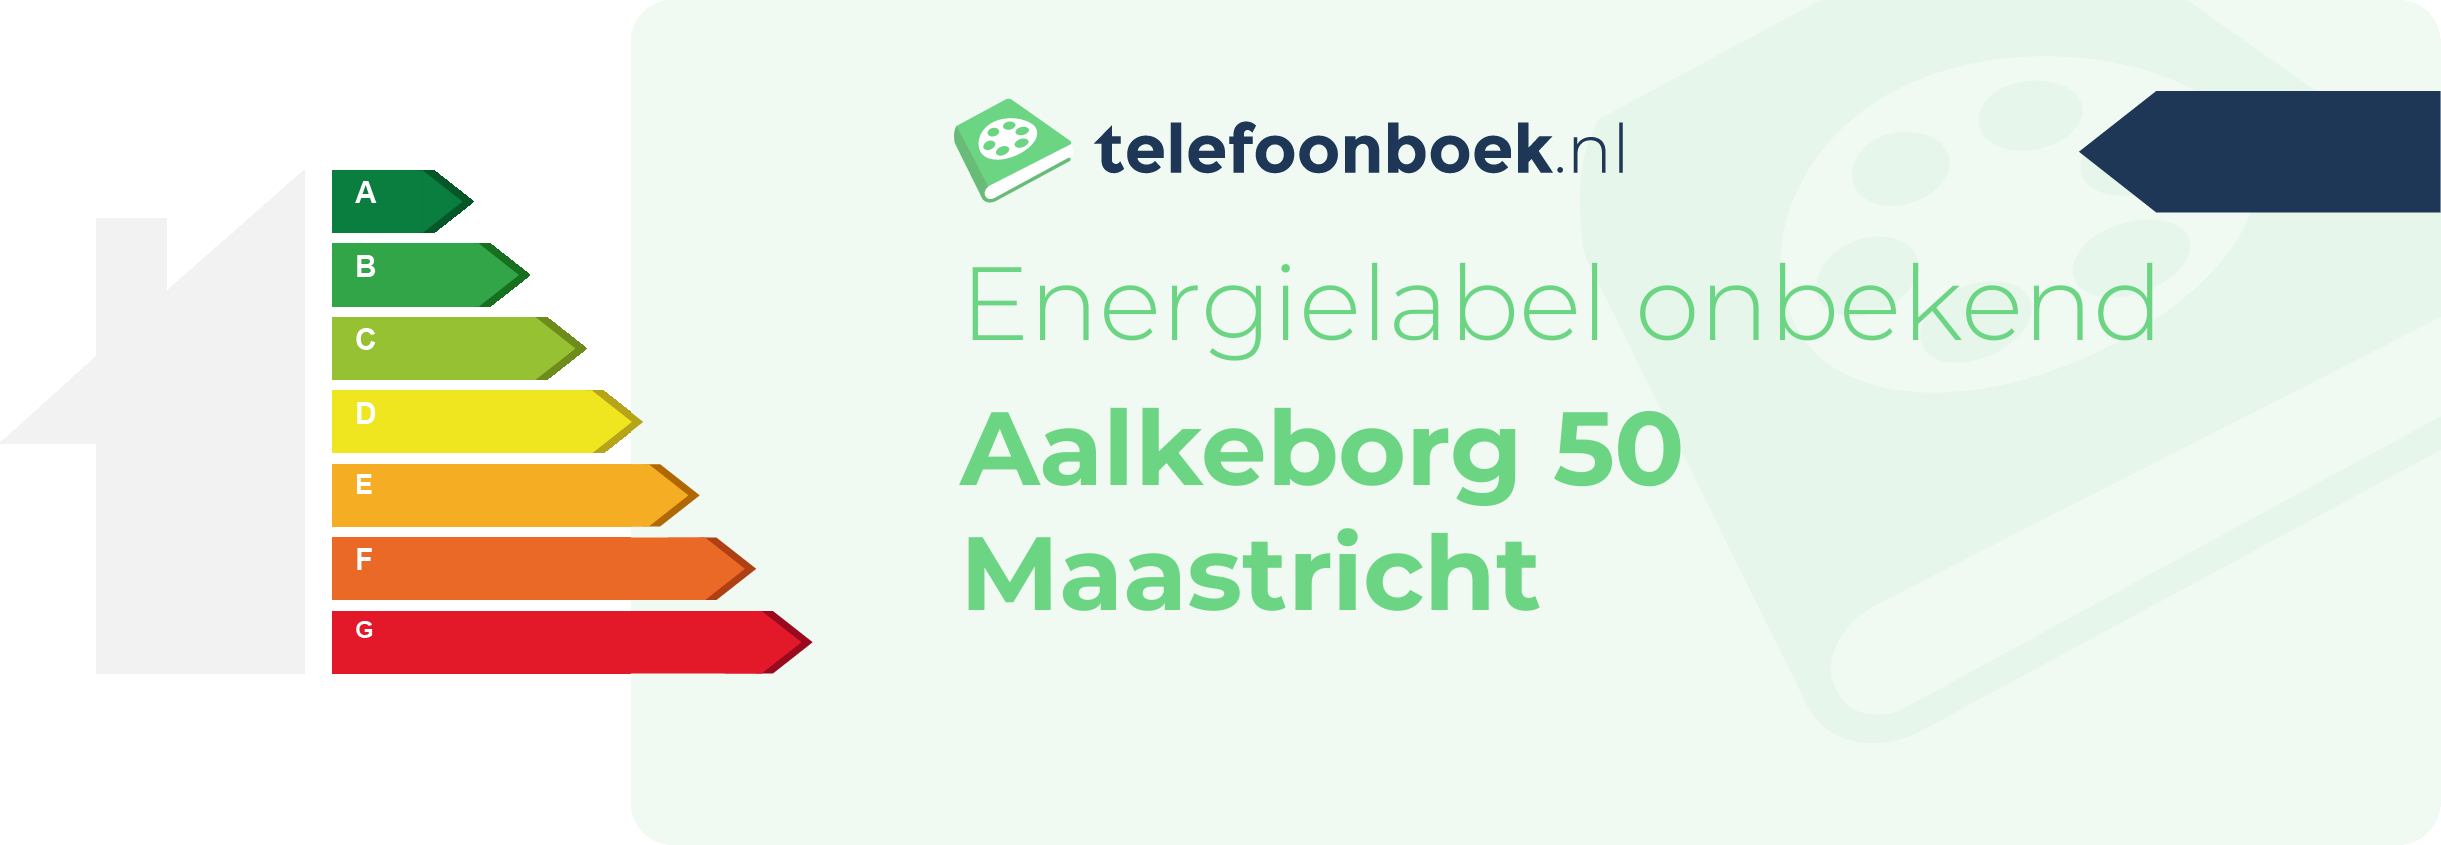 Energielabel Aalkeborg 50 Maastricht